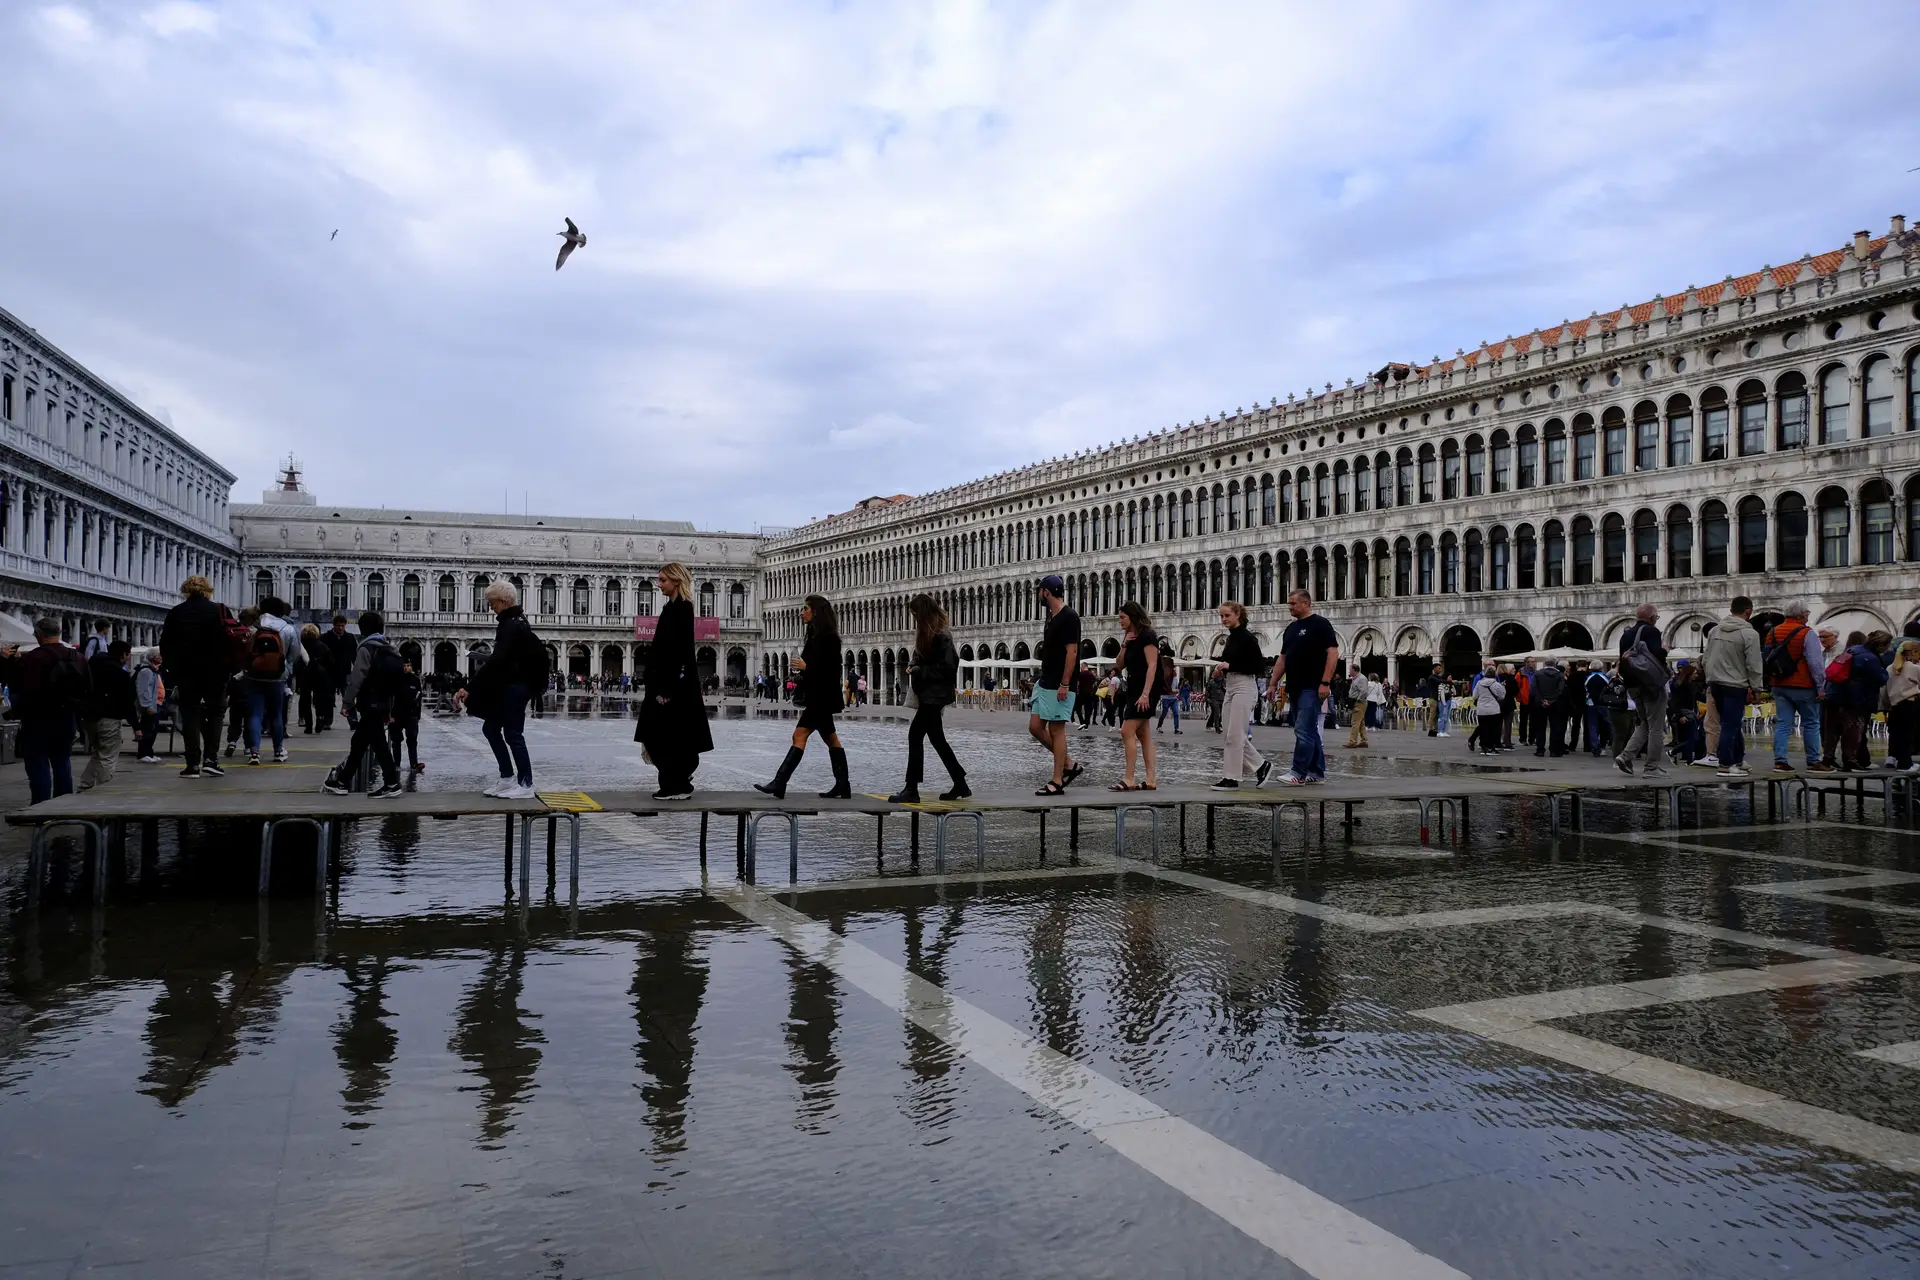 Se visitar Veneza, não se esqueça das galochas: as imagens do fenómeno "acqua alta"